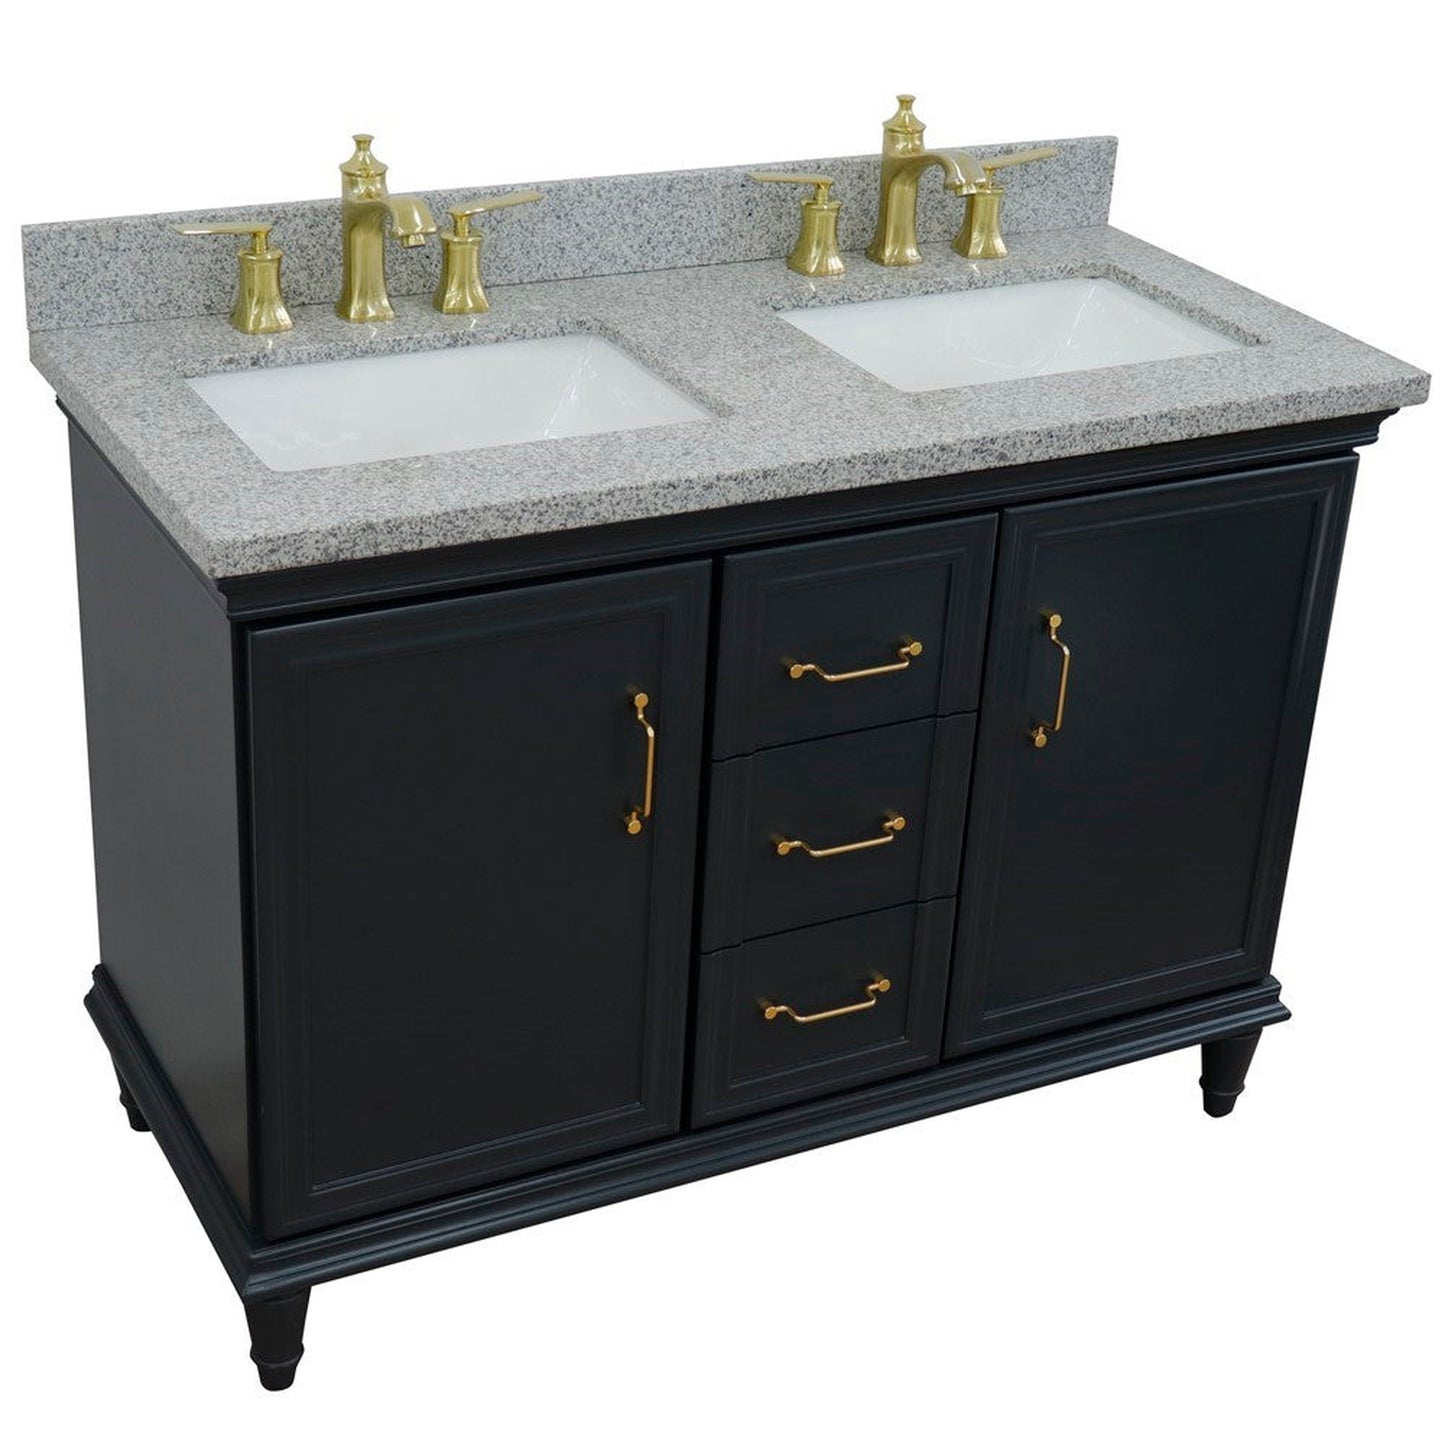 Bellaterra Home Forli 49" 2-Door 3-Drawer Dark Gray Freestanding Vanity Set With Ceramic Double Undermount Rectangular Sink and Gray Granite Top